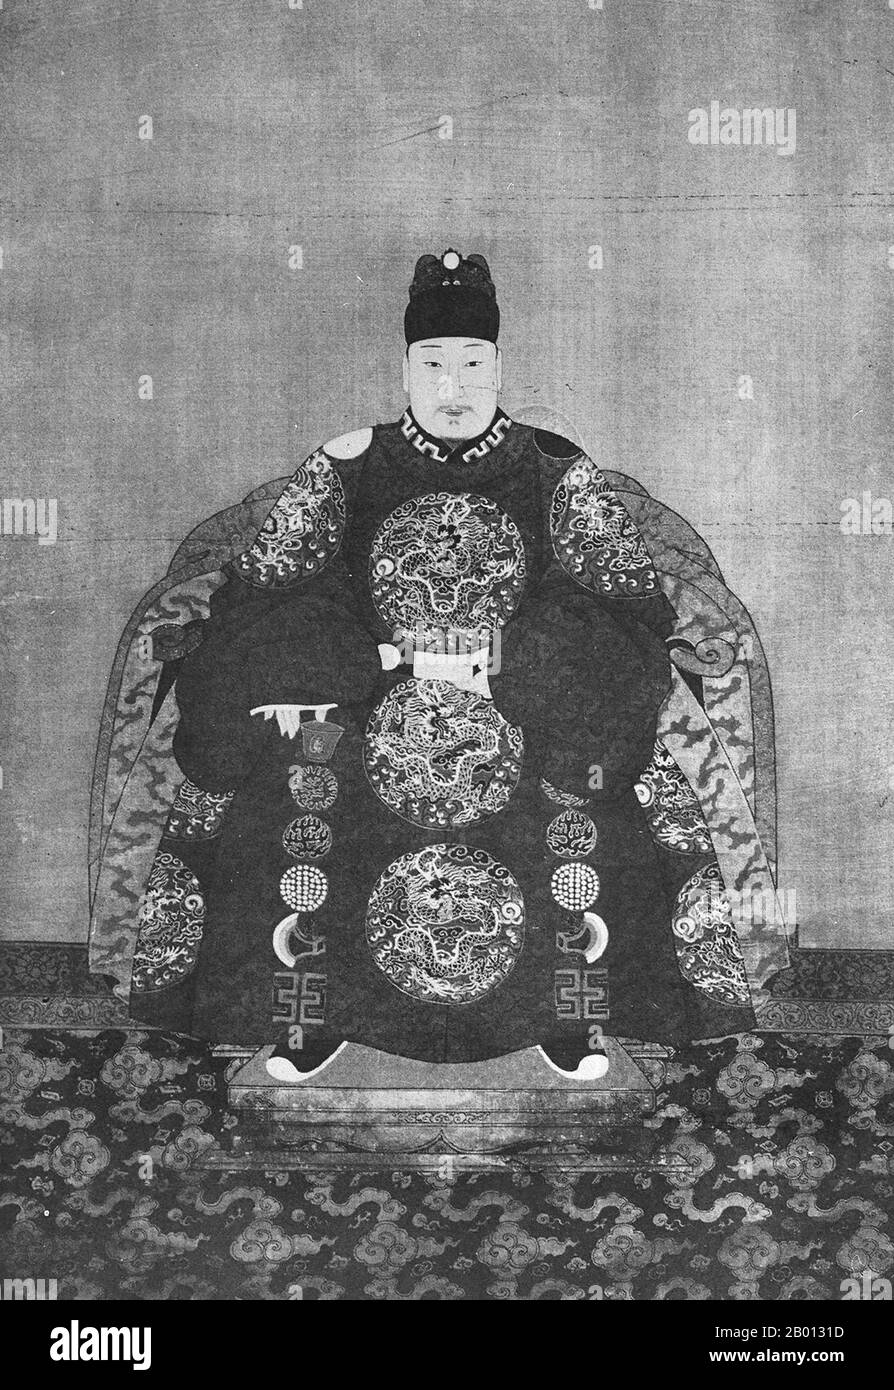 China: Kaiser Wanli (19. Juli 1572 - 18. August 1620), 14. Herrscher der Ming-Dynastie (r. 1572-1620). Hängende Schriftrolle, Porträt, 16.-17. Jahrhundert. Der Wanli-Kaiser (1572-1620), persönlicher Name Zhu Yijun und Tempelname Shenzong, war ein Kaiser der Ming-Dynastie. Sein Zeitname bedeutet „Zehntausend Kalender“. Die Herrschaft des Wanli-Imperators ist repräsentativ für den Niedergang der Ming. Er war ein unmotivierter und gieriger Herrscher, dessen Herrschaft von fiskalischen Problemen, militärischem Druck und wütenden Bürokraten geplagt wurde. Während der letzten Jahre von Wanlis Herrschaft begannen die Mandschu, Grenzüberfälle durchzuführen. Stockfoto